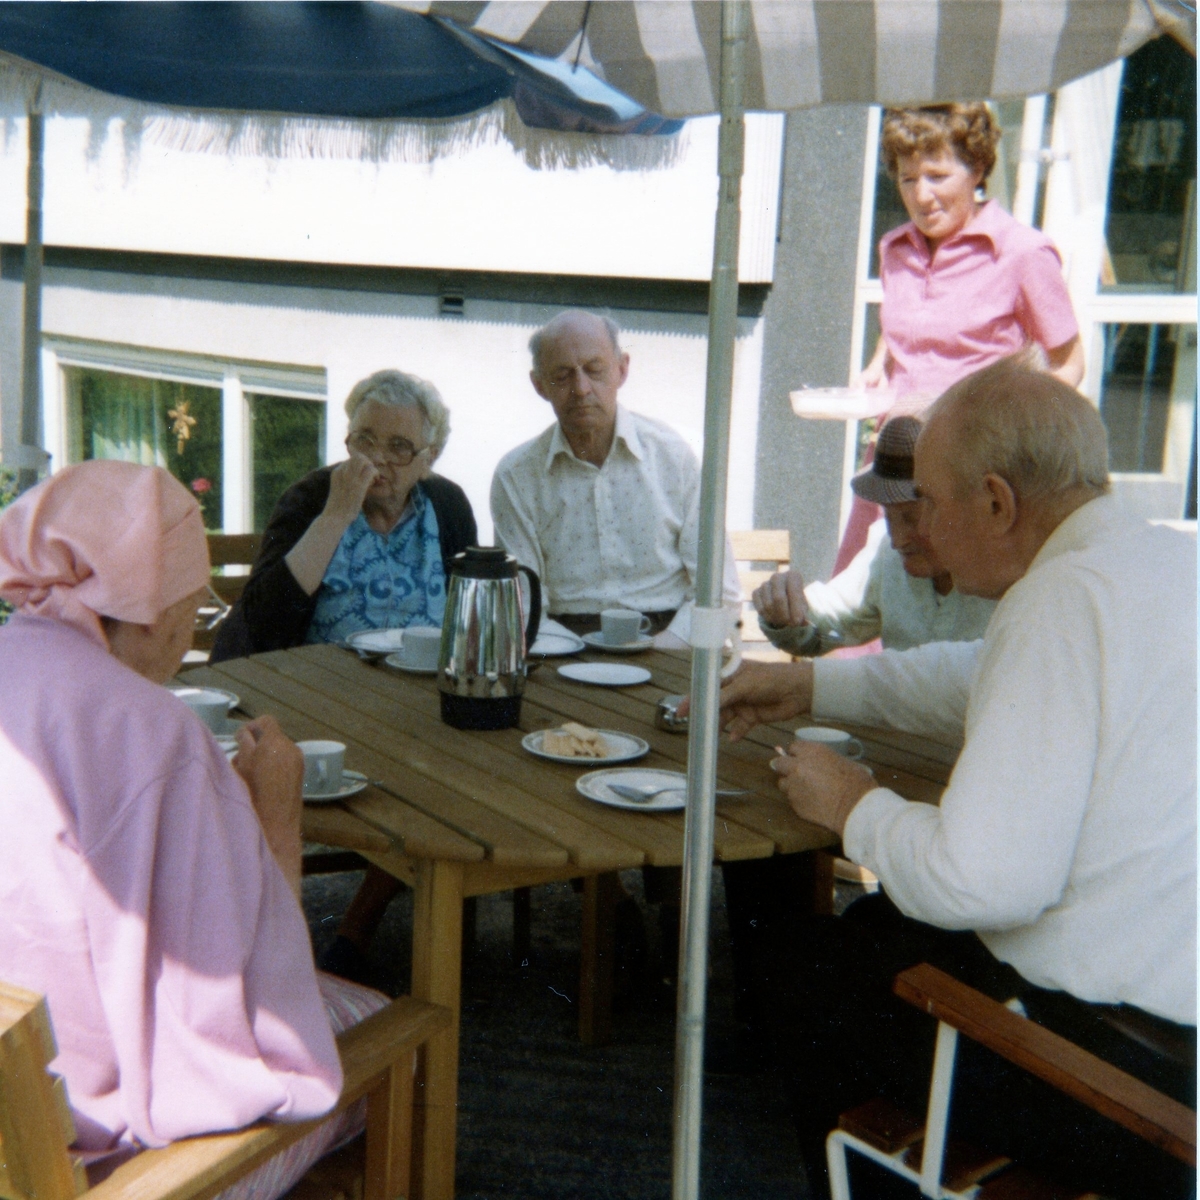 Midsommar på Brattåshemmet, vilken avnjuts utomhus med kaffe och tårta år 1980. Tredje person från vänster är Anselm Zackrisson, kokerska Ingela Sjöberg samt Alfred Mattsson (iklädd hatt). Övriga är okända.